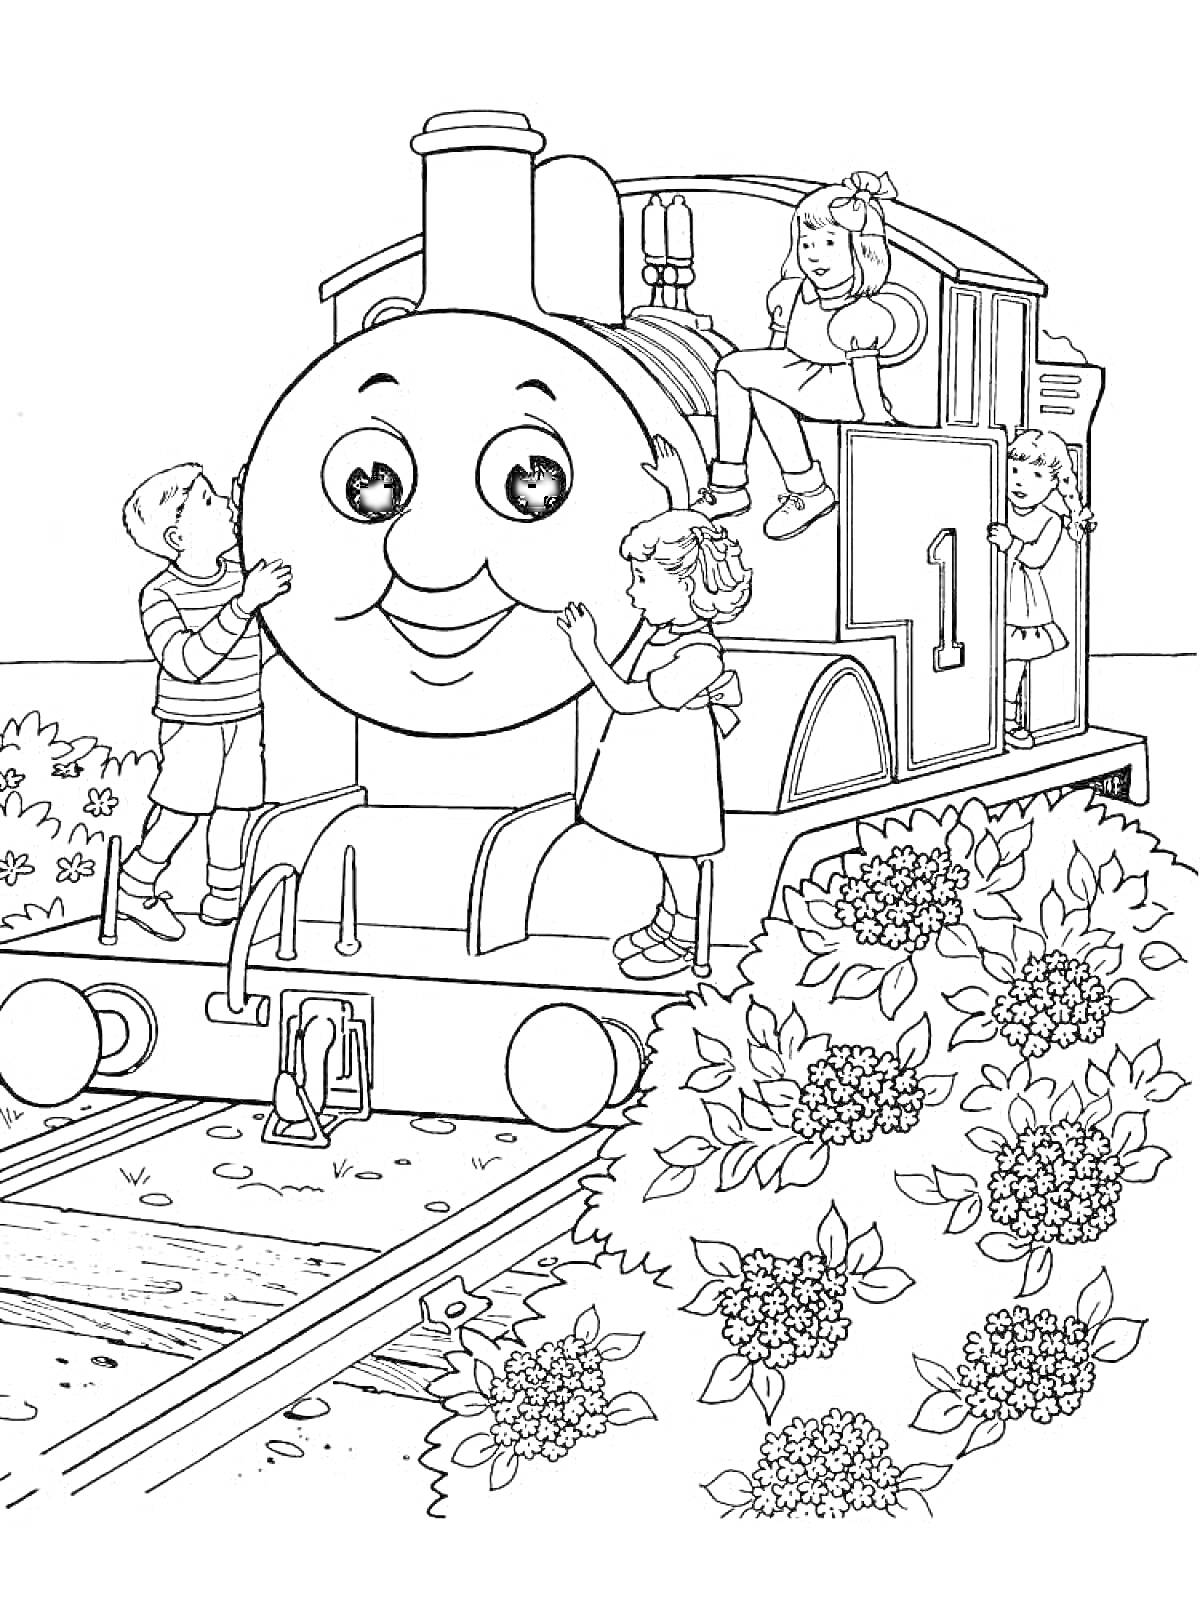 Раскраска Паровозик Томас с детьми на железнодорожных путях рядом с цветущими кустами